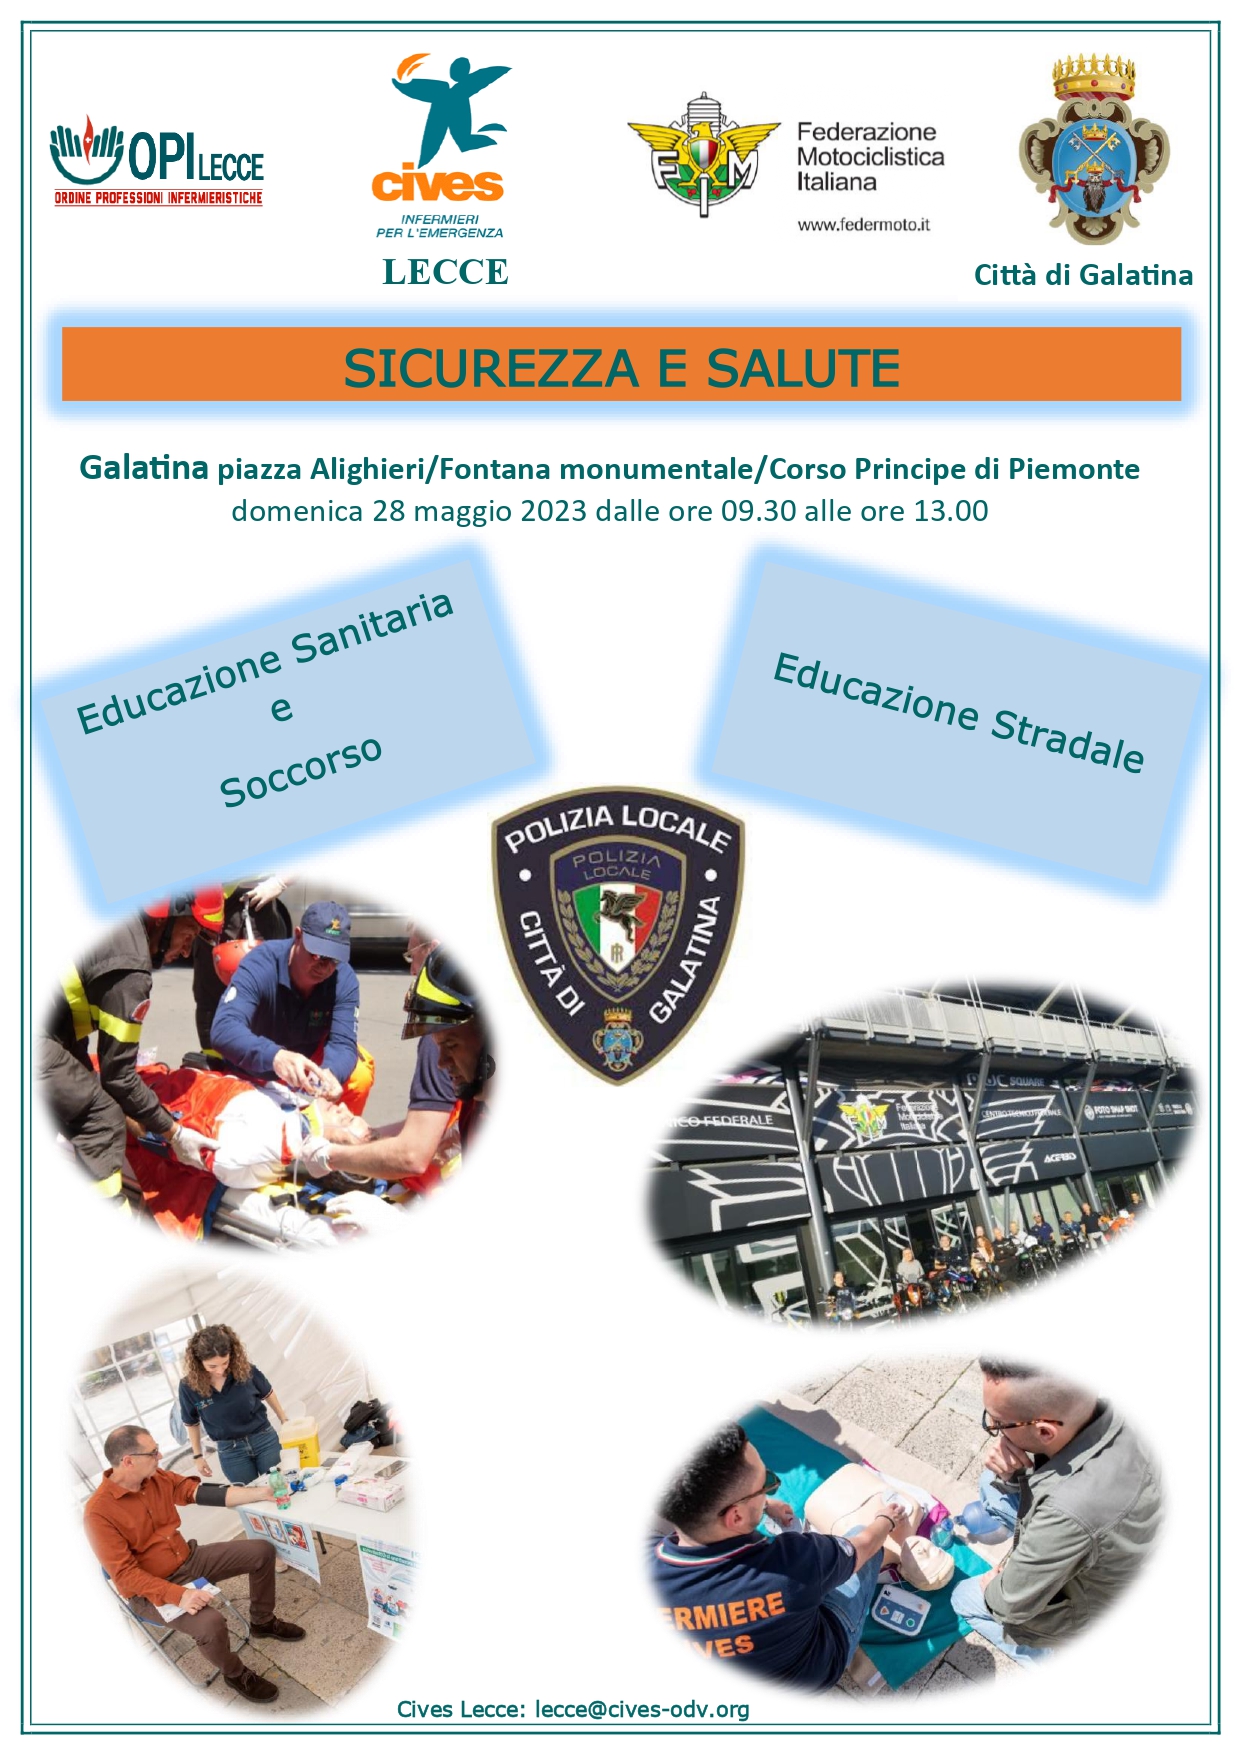 “Sicurezza e Salute: educazione stradale, educazione sanitaria e soccorso” – CIVES Lecce